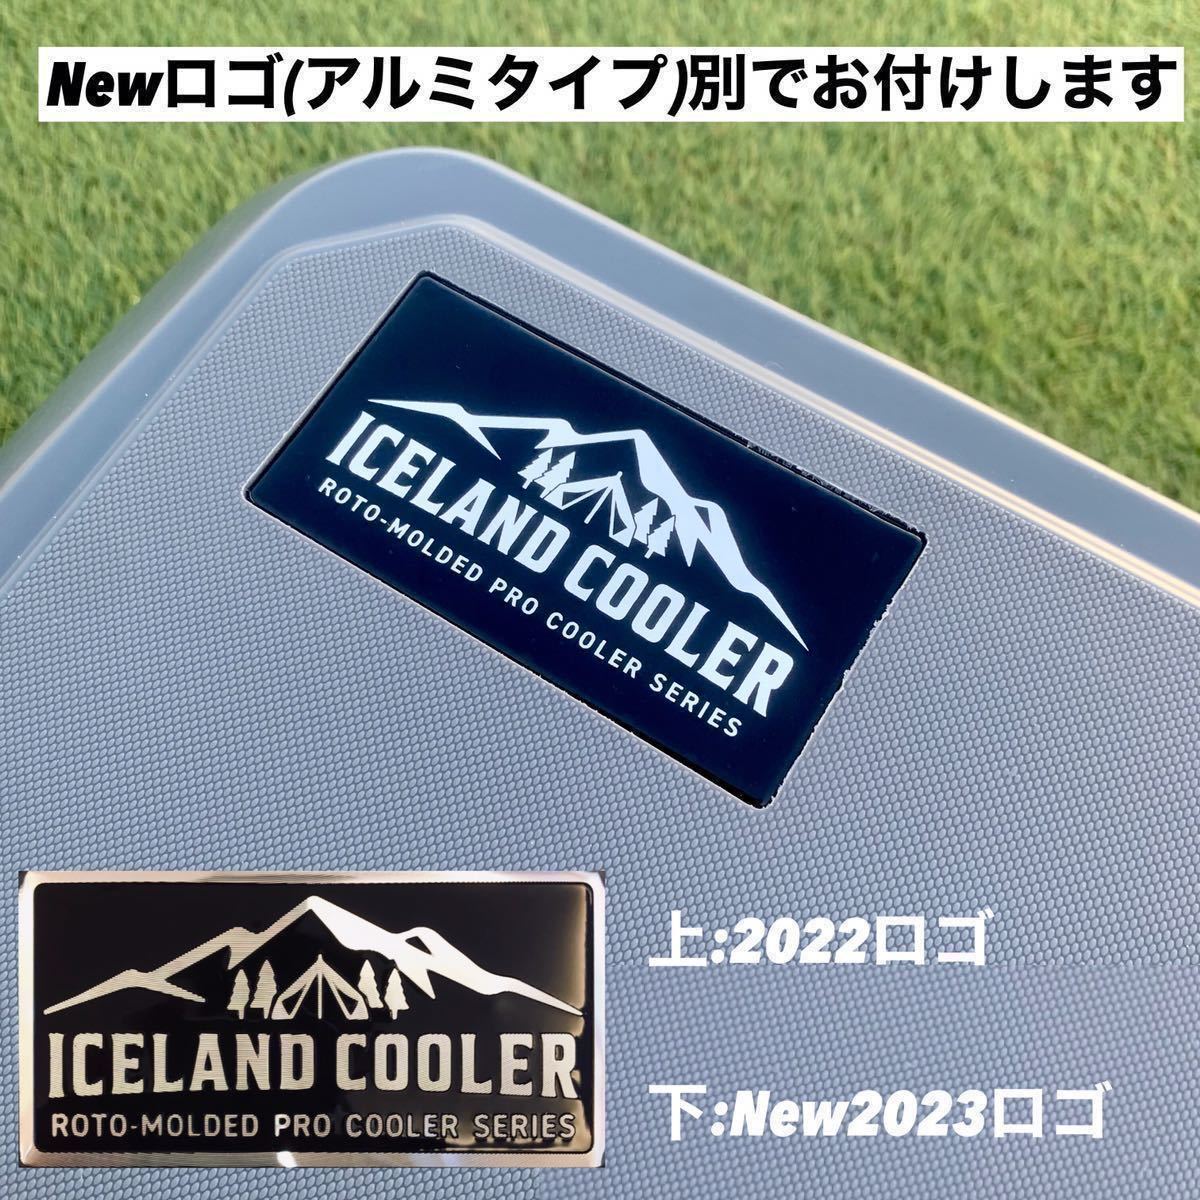 安価 正規 New ICELANDCOOLER アイスランドクーラーボックス 35QT